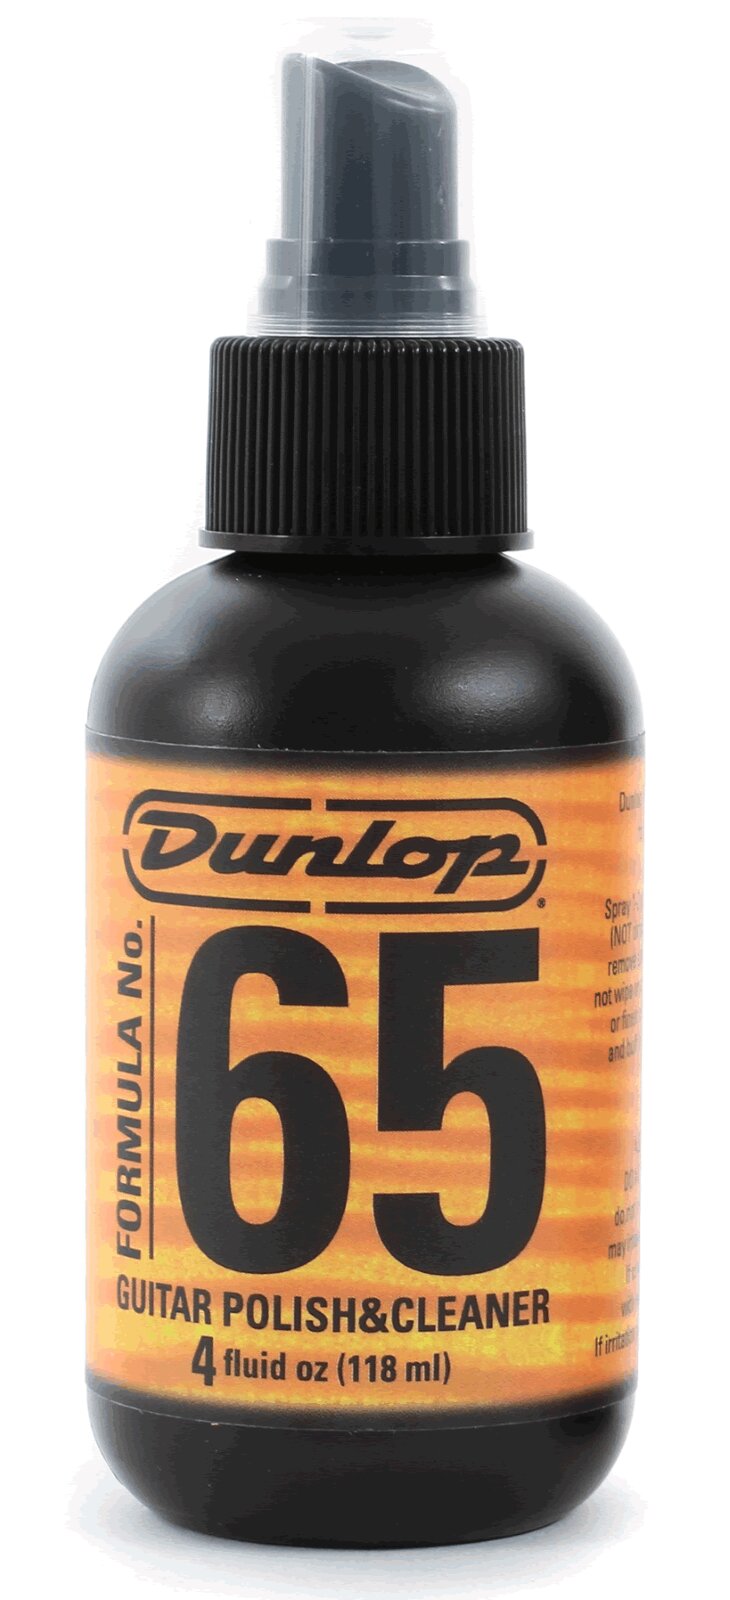 Dunlop Formula 65/654 Gitarrenpolitur und Reiniger im Spray 118ml : photo 1